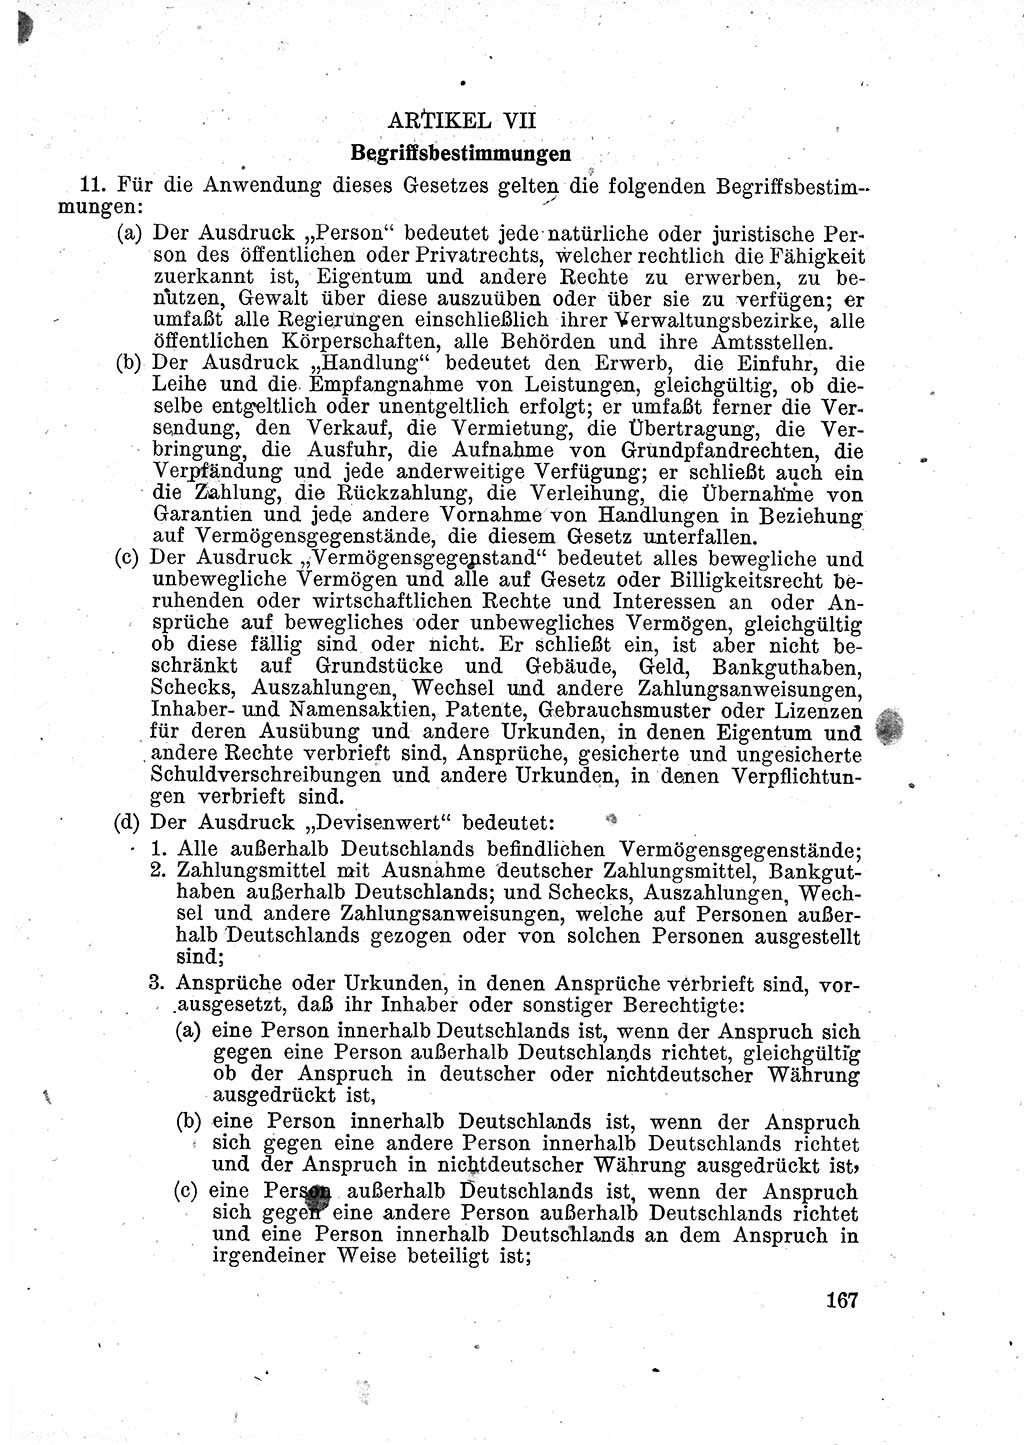 Das Recht der Besatzungsmacht (Deutschland), Proklamationen, Deklerationen, Verordnungen, Gesetze und Bekanntmachungen 1947, Seite 167 (R. Bes. Dtl. 1947, S. 167)